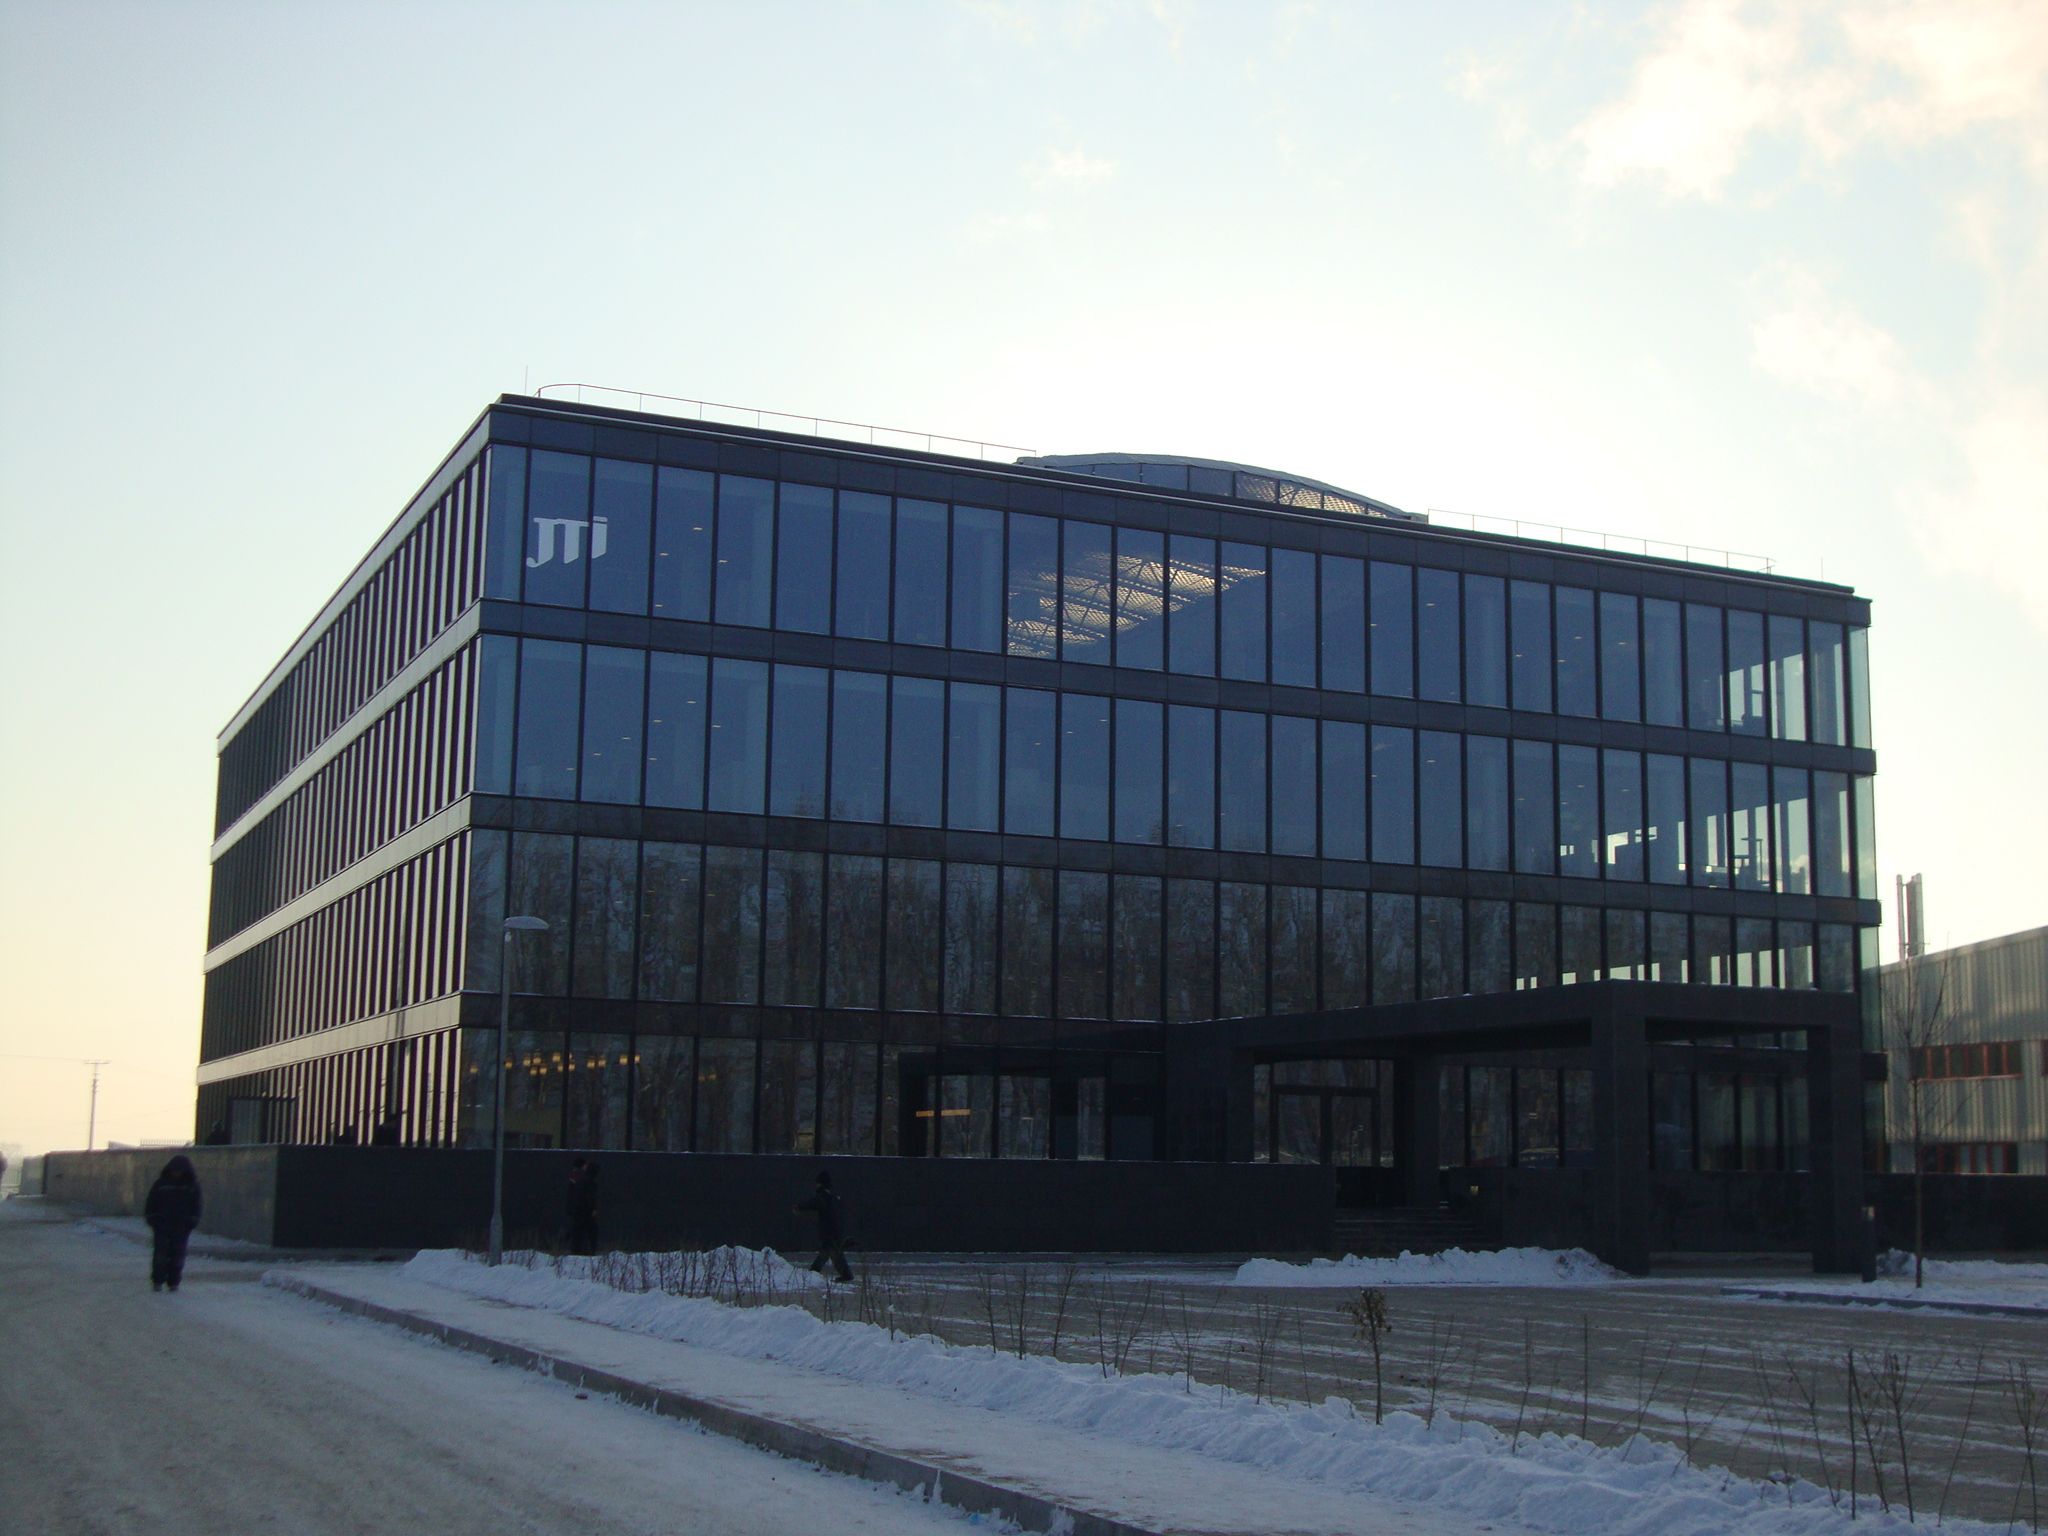 JTI Genel Müdürlük Binası